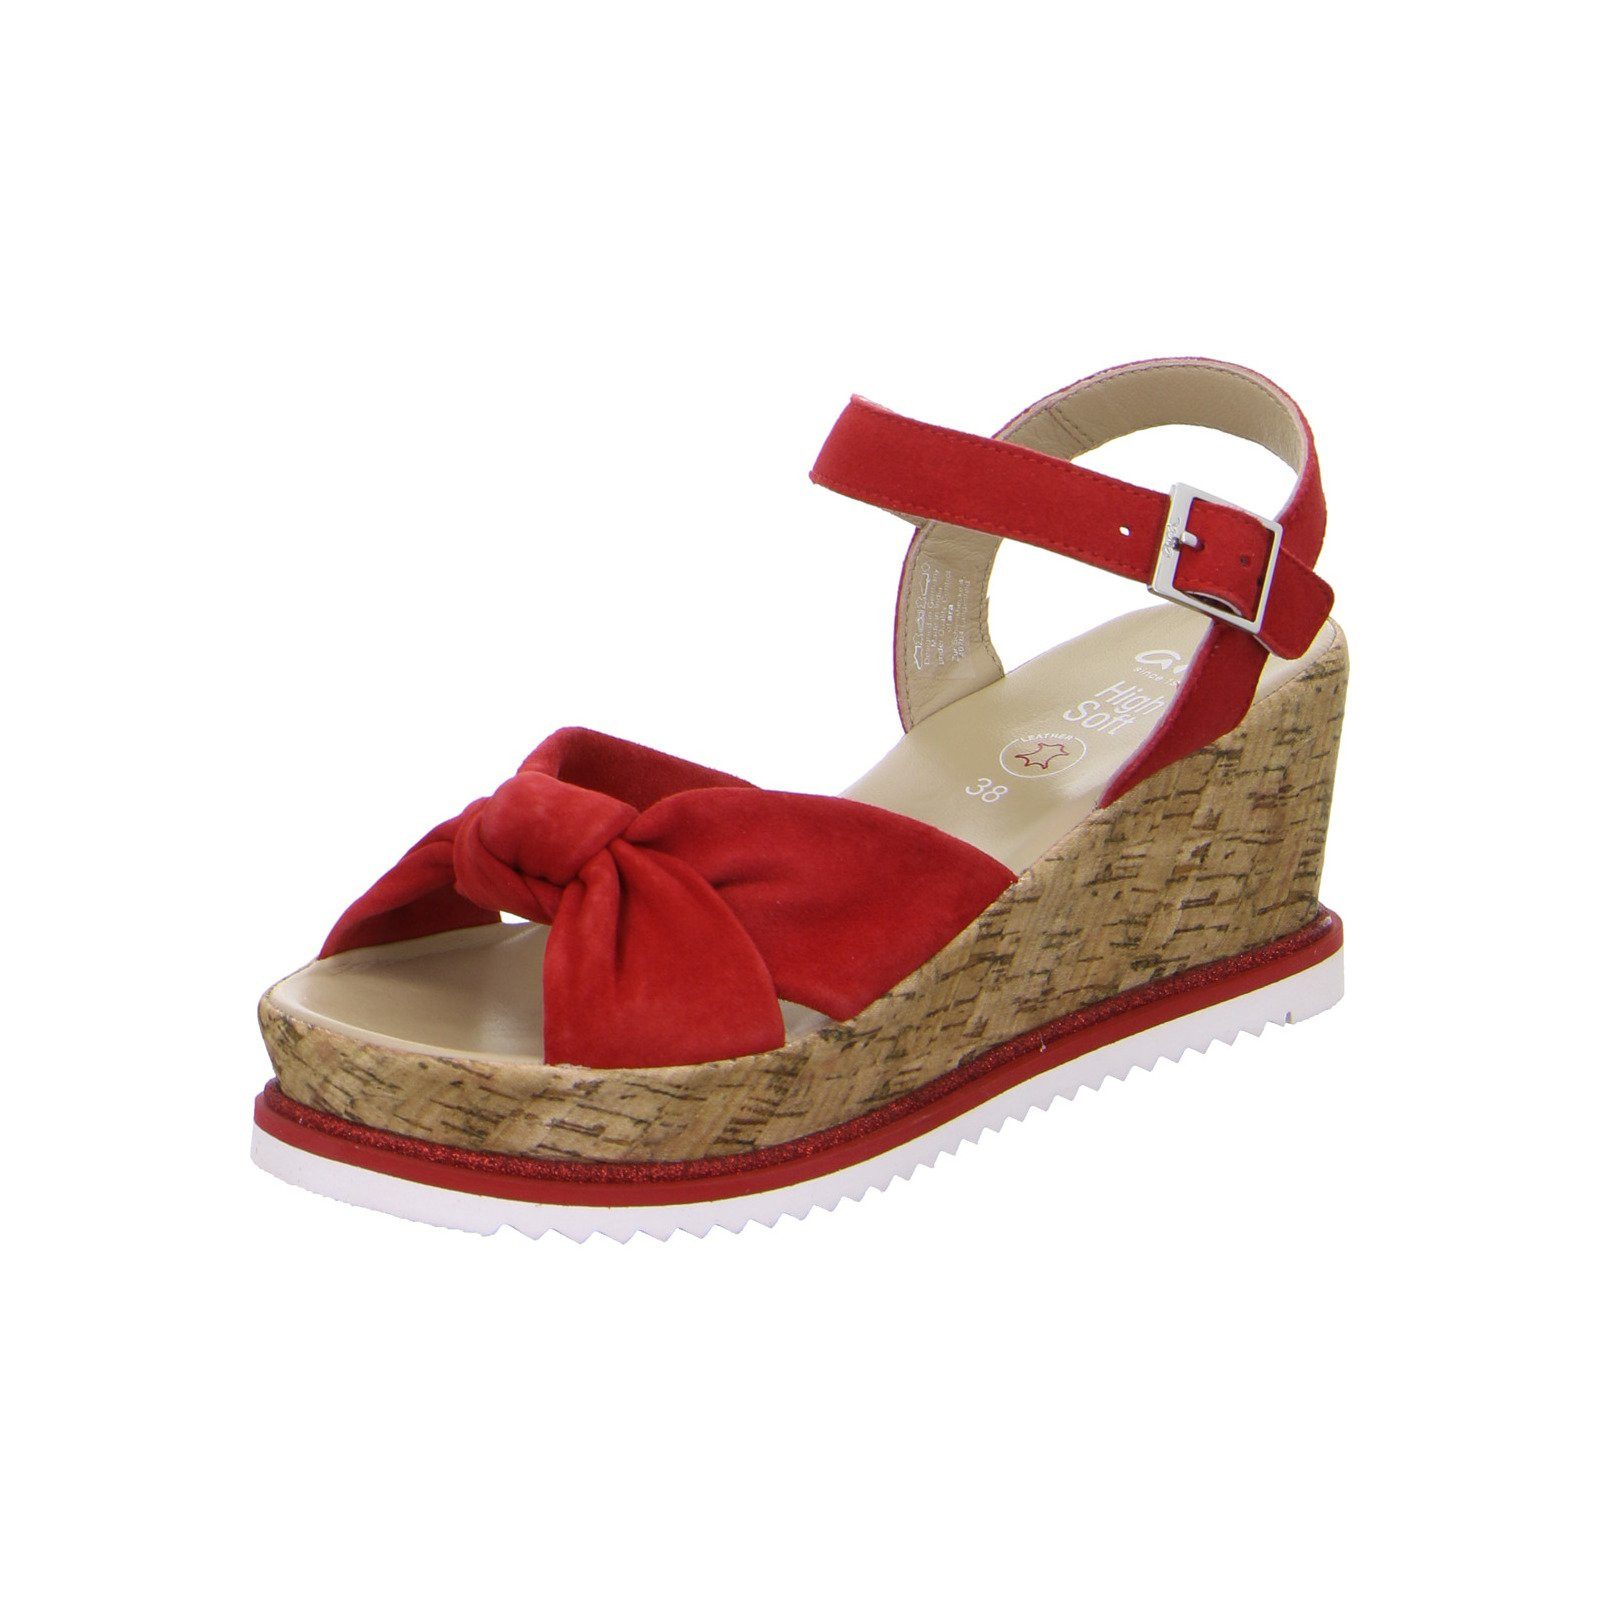 Ara Parma - Damen Schuhe Sandalette rot